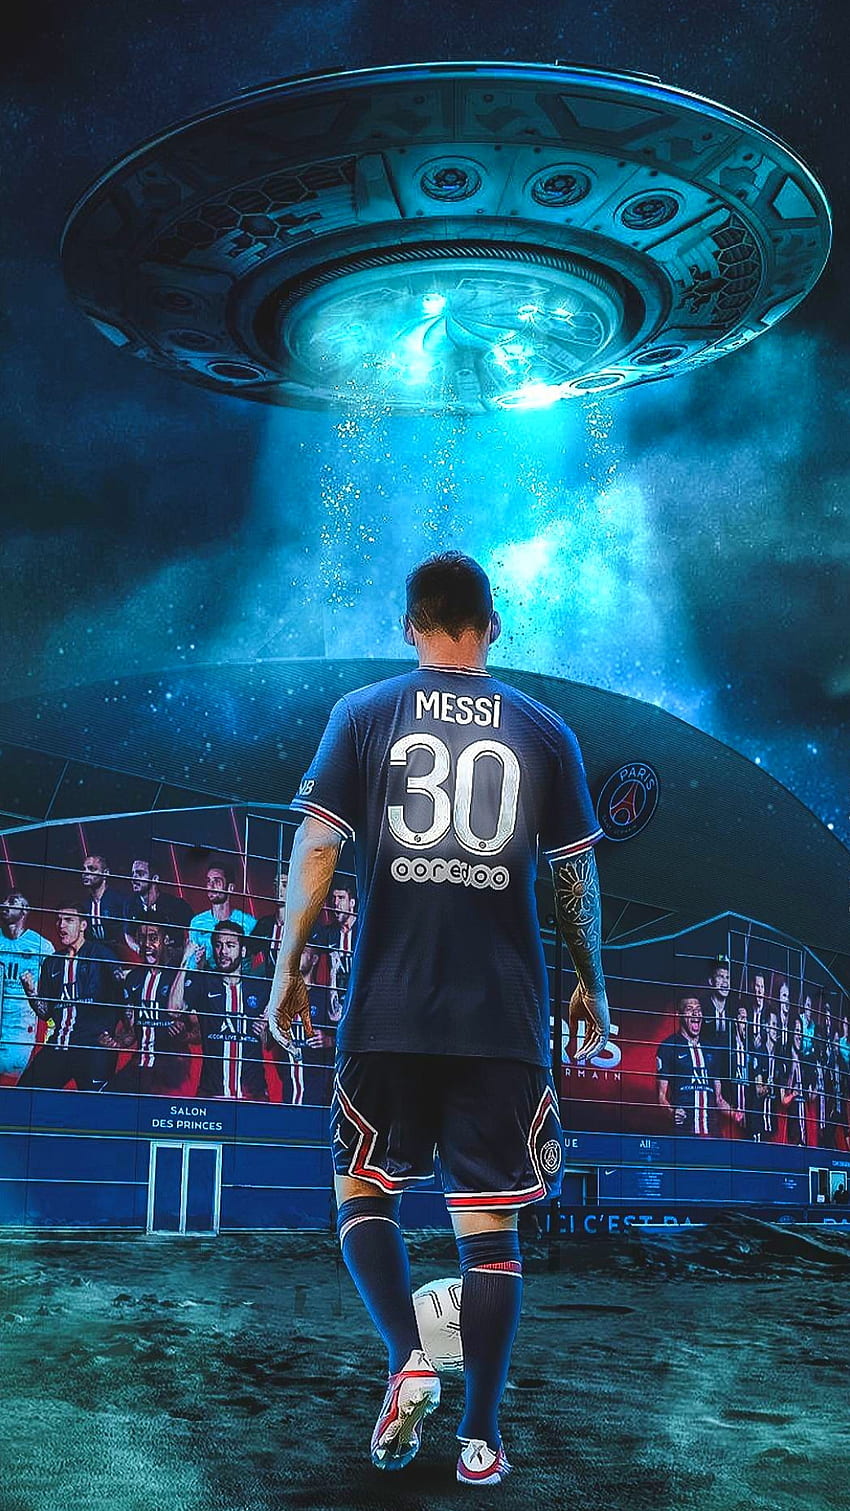 Với Messi làm nền tảng, hình nền PSG của bạn sẽ trở nên đẹp hơn bao giờ hết. Những hình ảnh độc đáo và sắc nét sẽ làm bạn muốn nhìn mãi mãi.